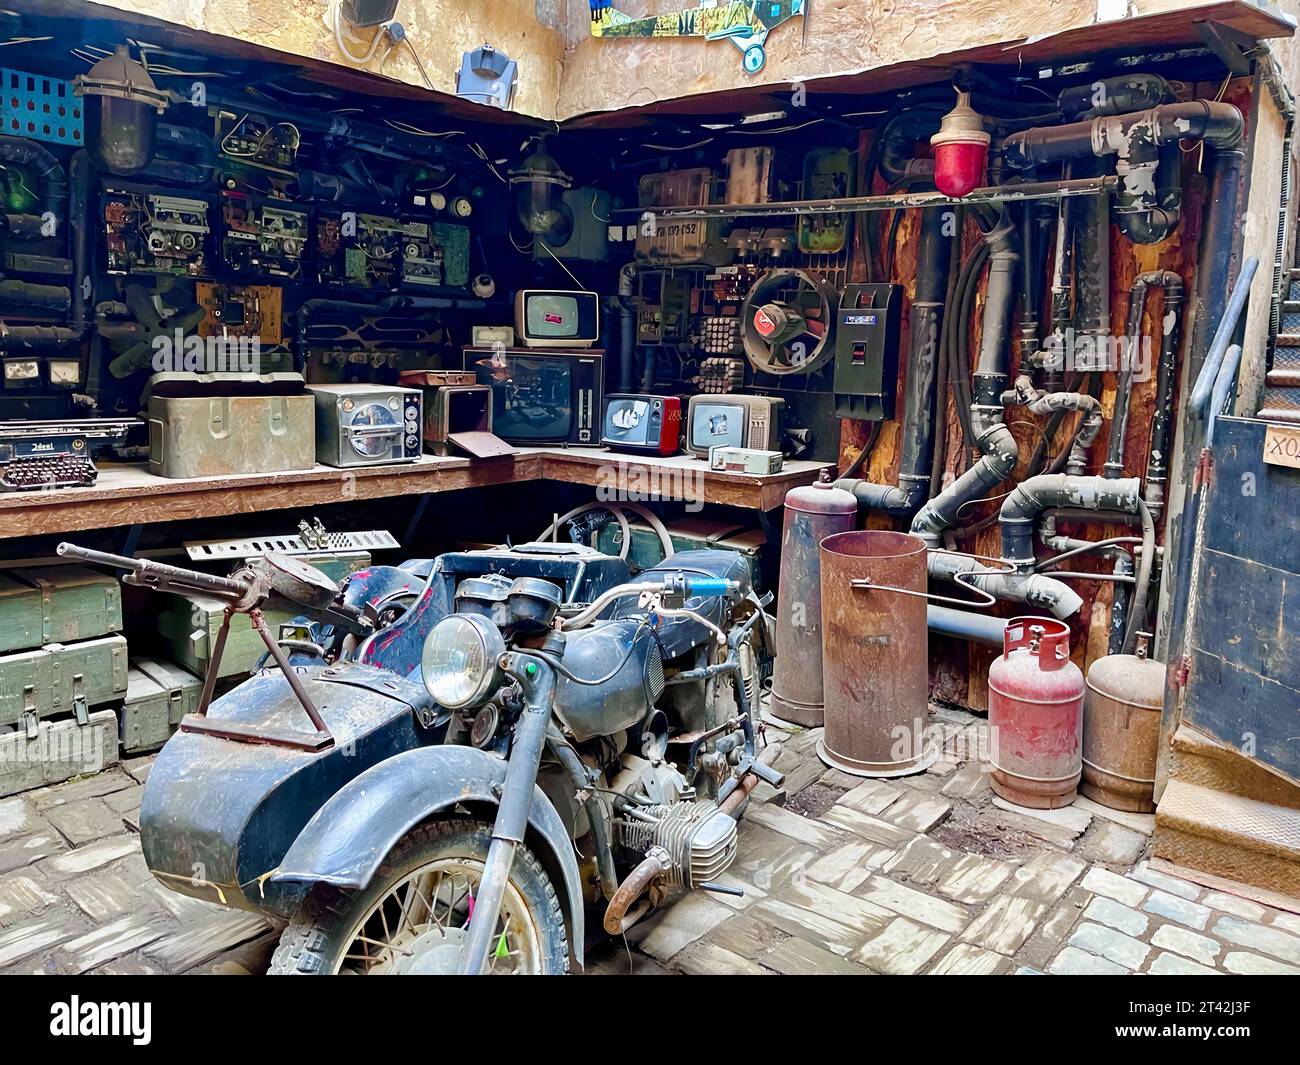 Ein antikes Motorrad aus vergangener Zeit wird in einer schwach beleuchteten Garage ausgestellt, die ein nostalgisches Flair vermittelt Stockfoto